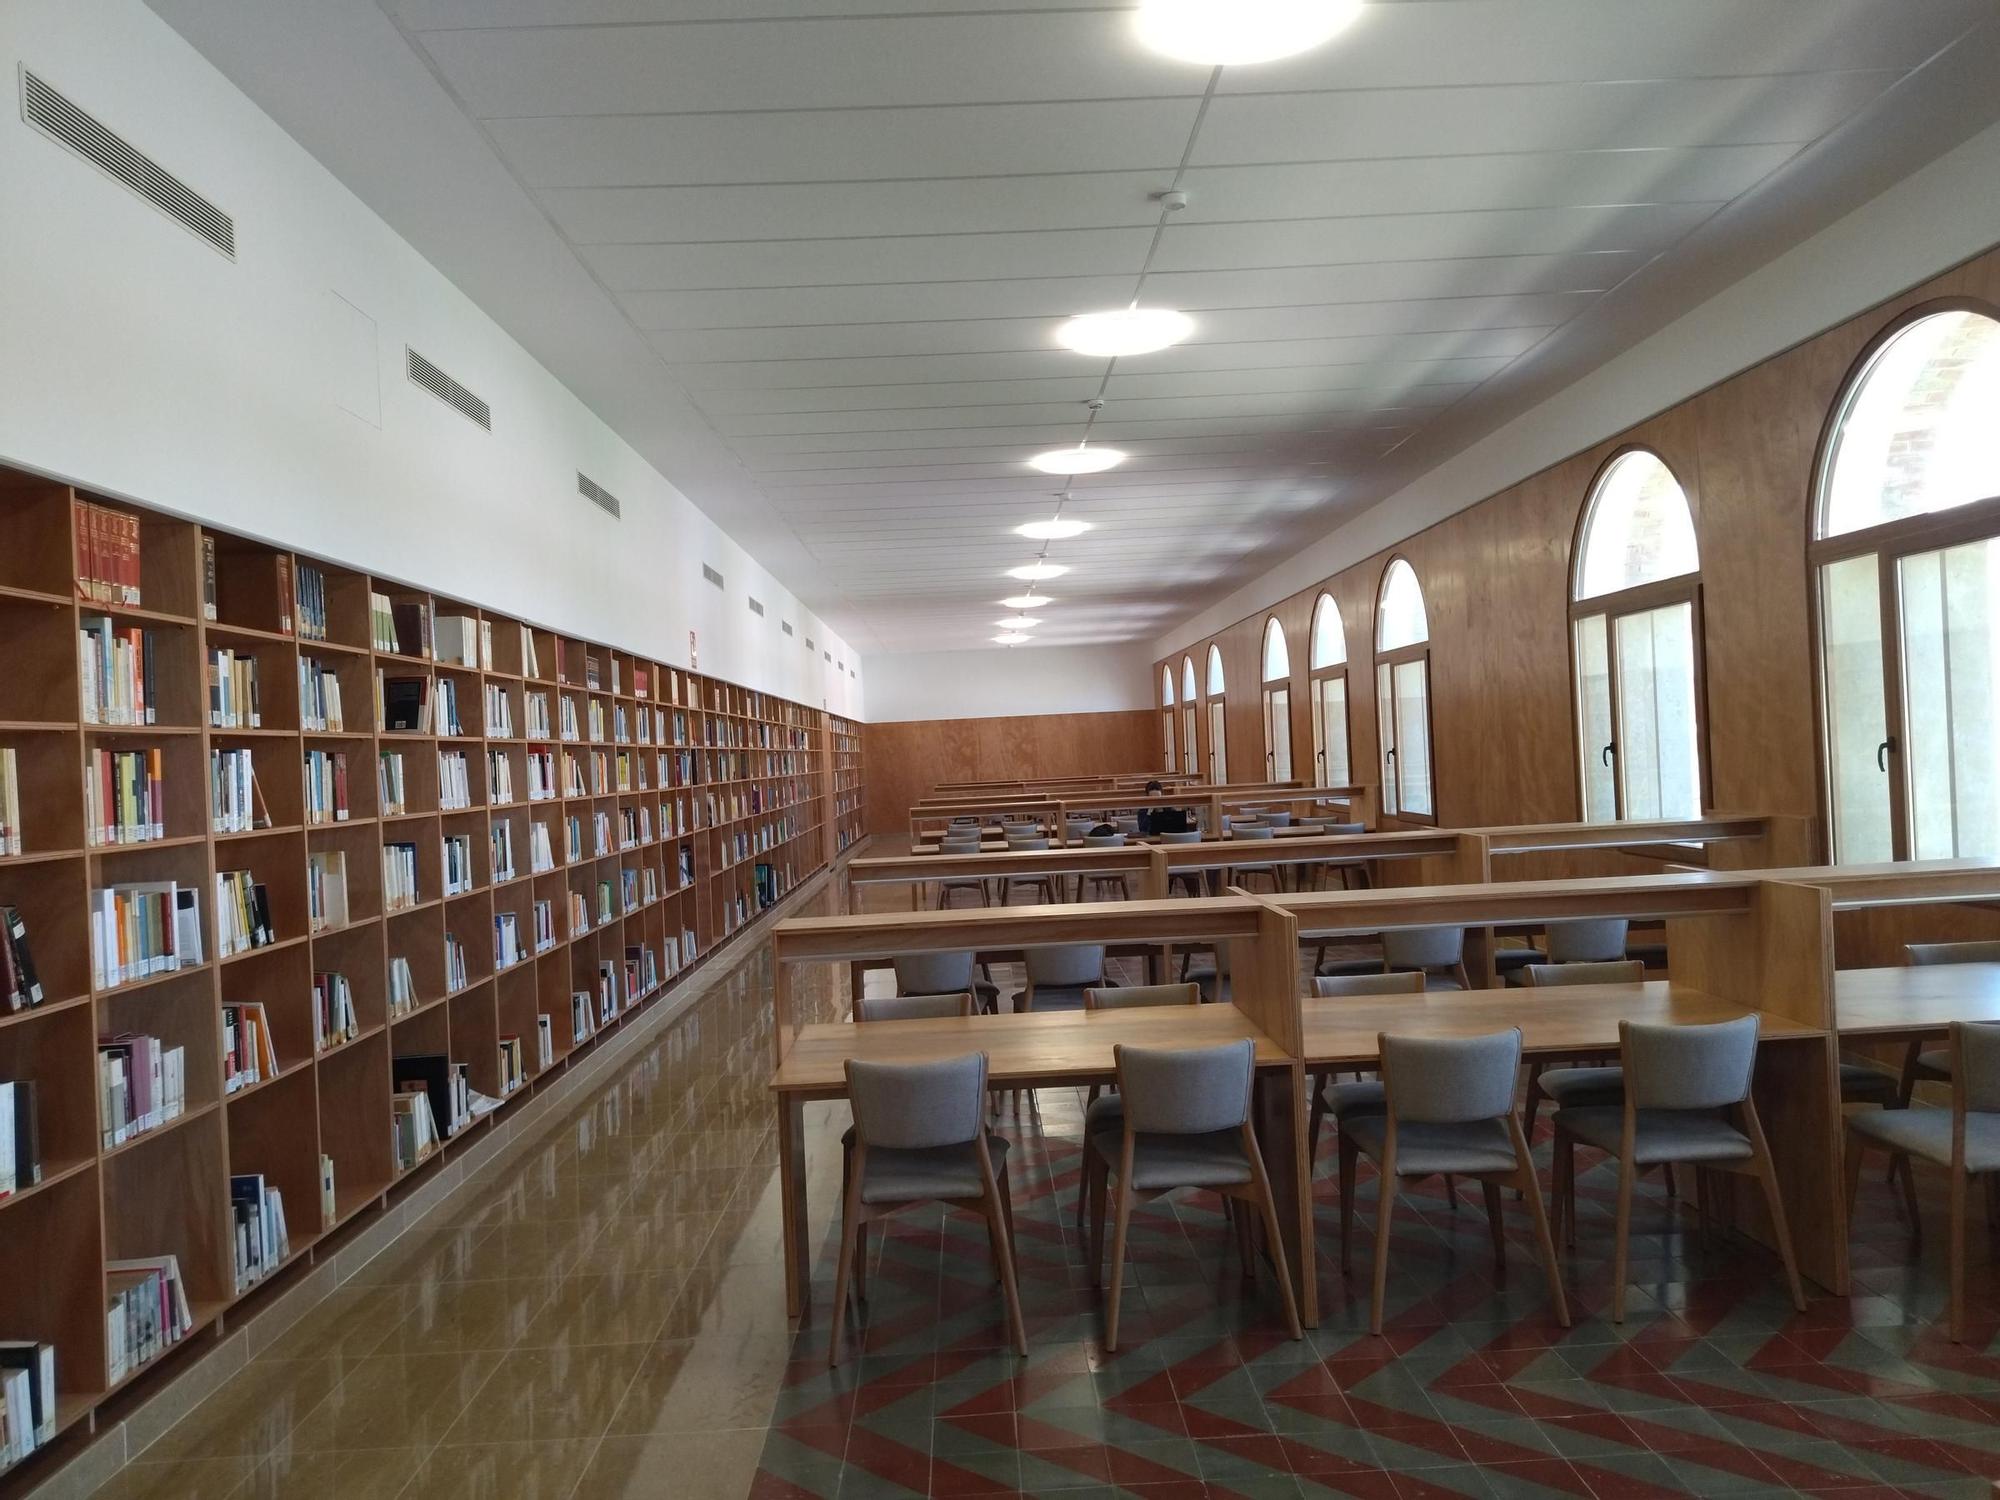 Historia, libros y recuerdos: la magnífica biblioteca Carmen Alemany de Pego (imágenes)